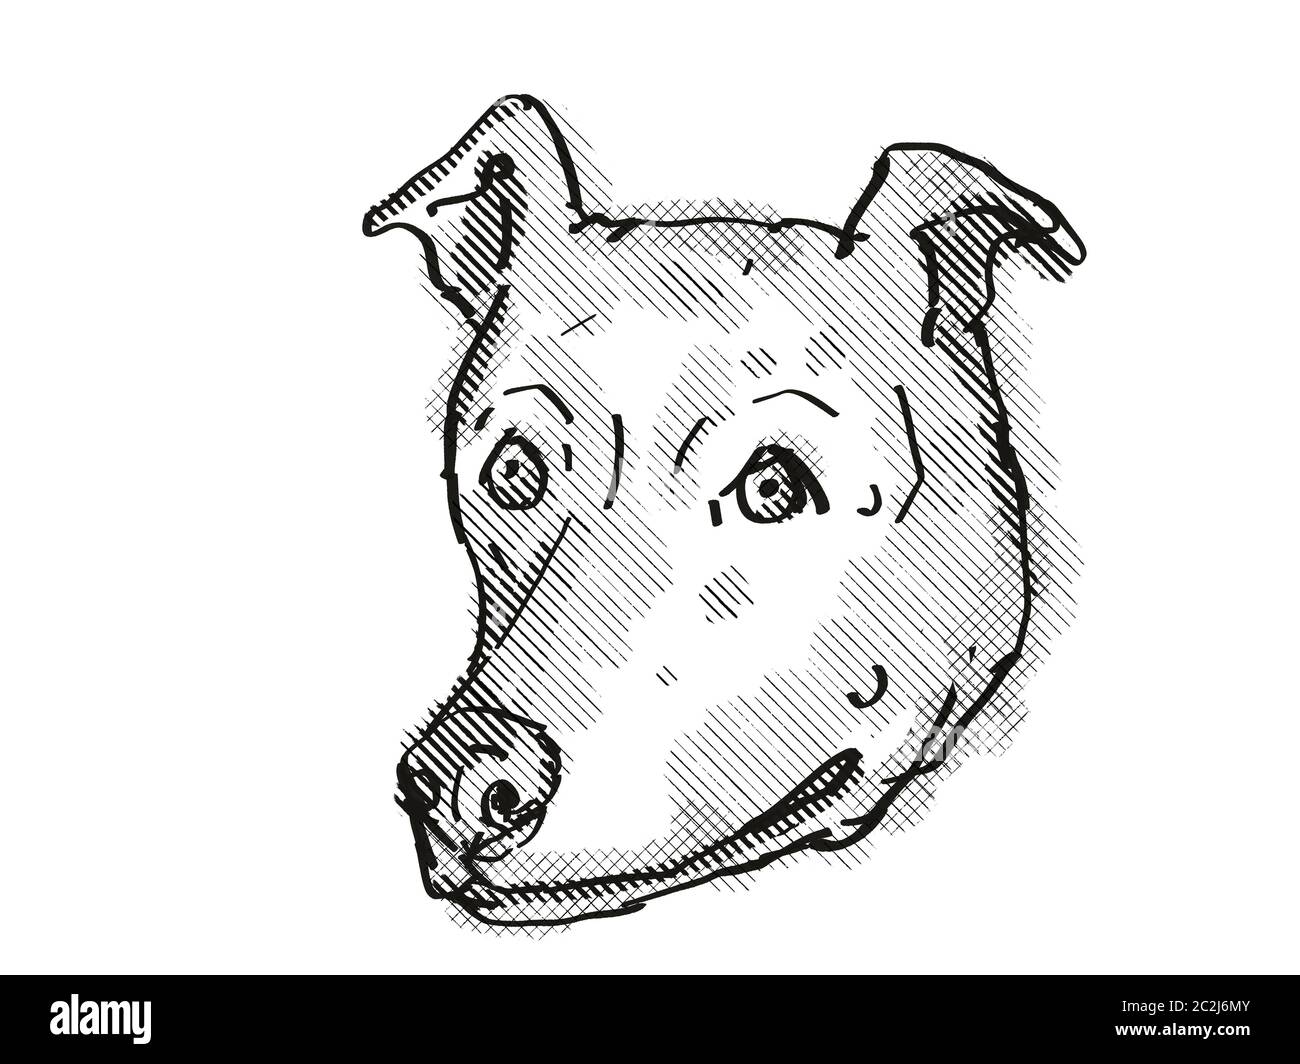 Retro Cartoon Stil Zeichnung der Kopf eines Greyhound, ein Hund oder Hund Rasse auf isolierten weißen Hintergrund in Schwarz und Weiß. Stockfoto